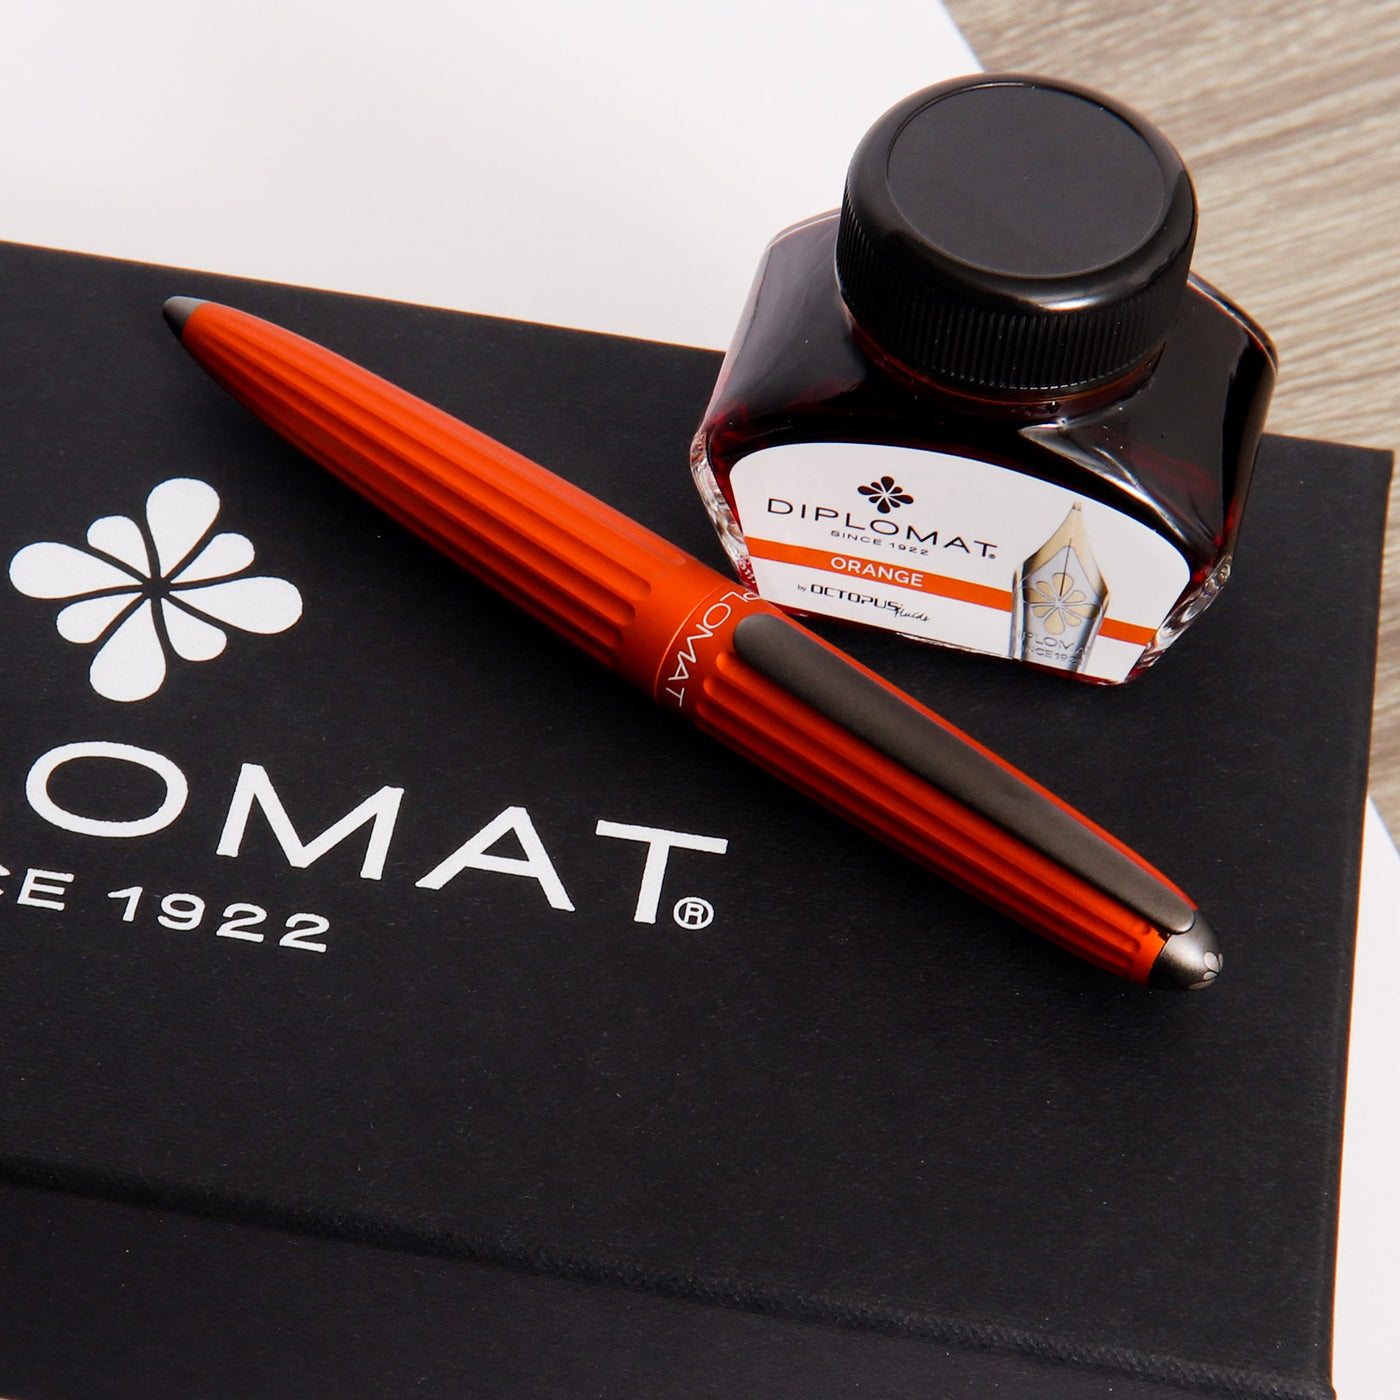 Diplomat-Aero-Orange-Fountain-Pen-Gift-Set-Box